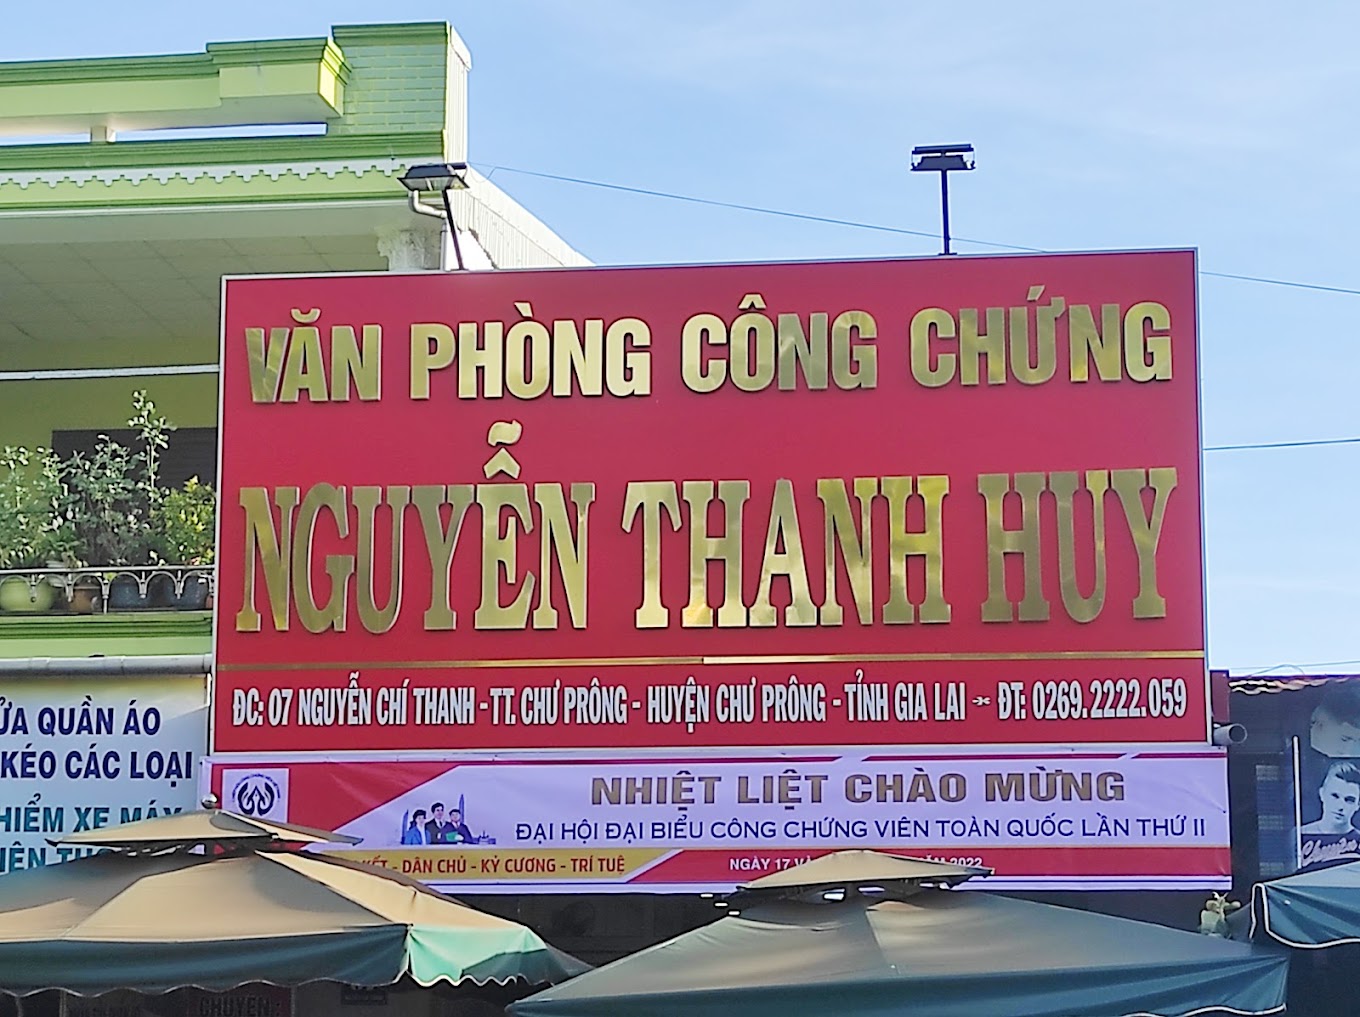 Liên hệ Văn phòng công chứng Nguyễn Thanh Huy thông tin địa chỉ số điện thoại